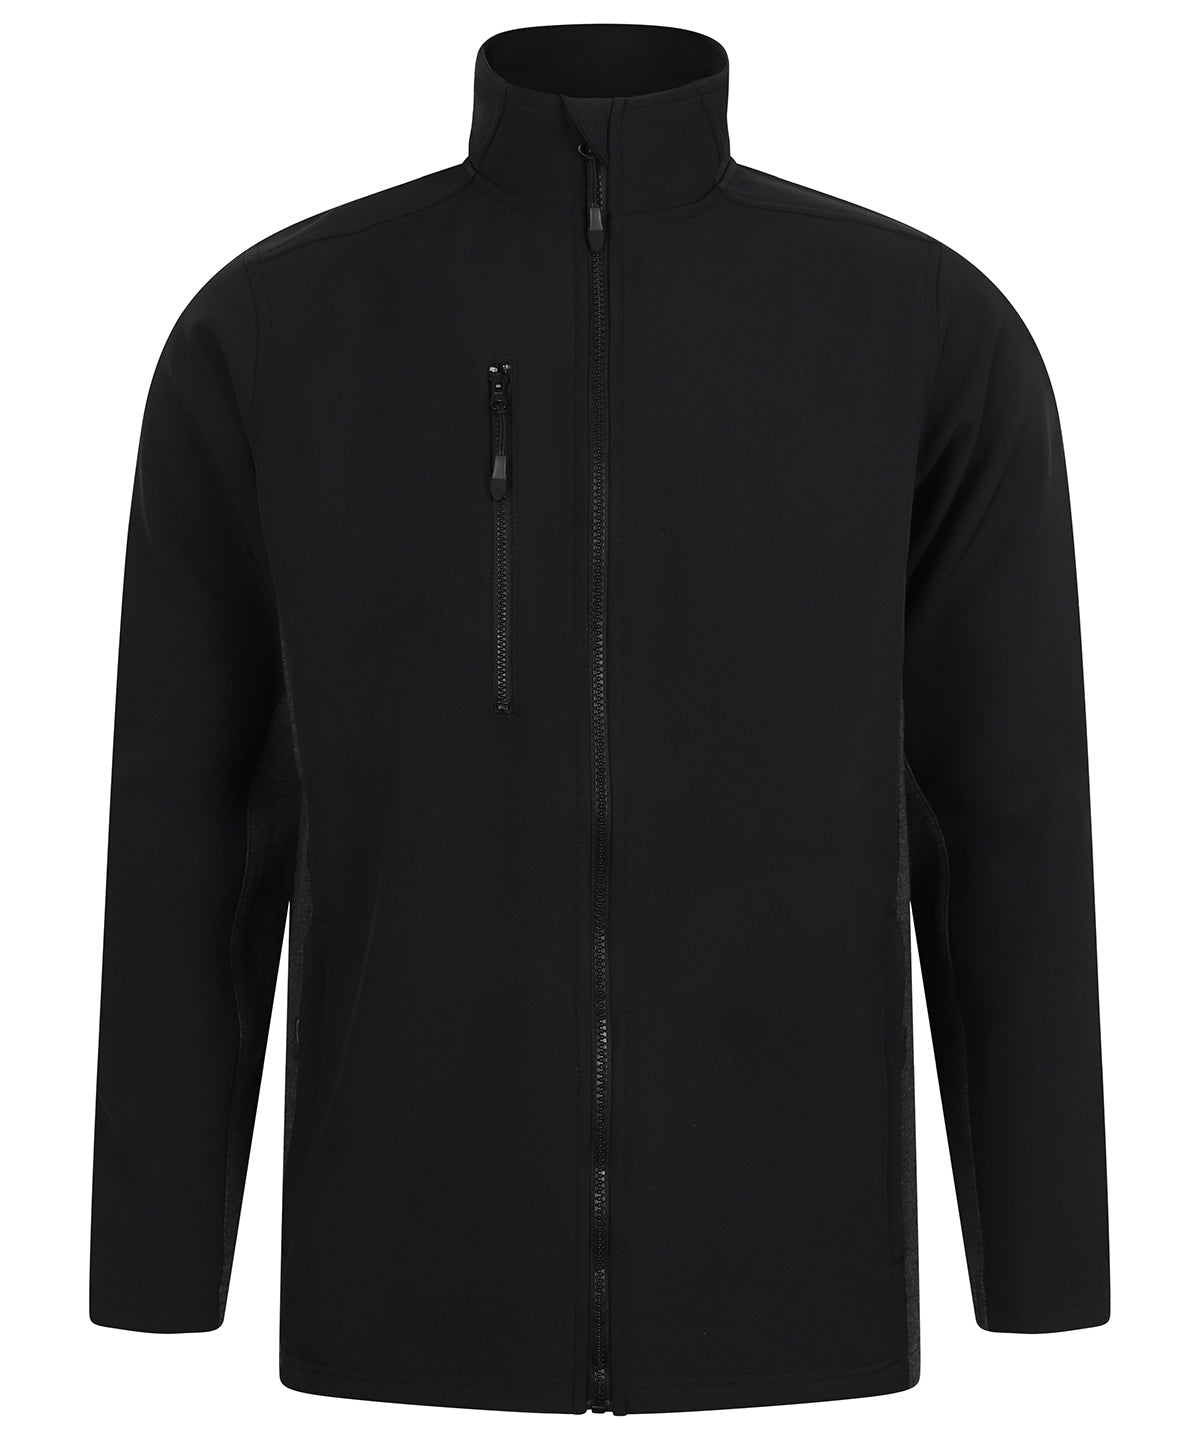 Personalised Jackets - Black Henbury Softshell jacket